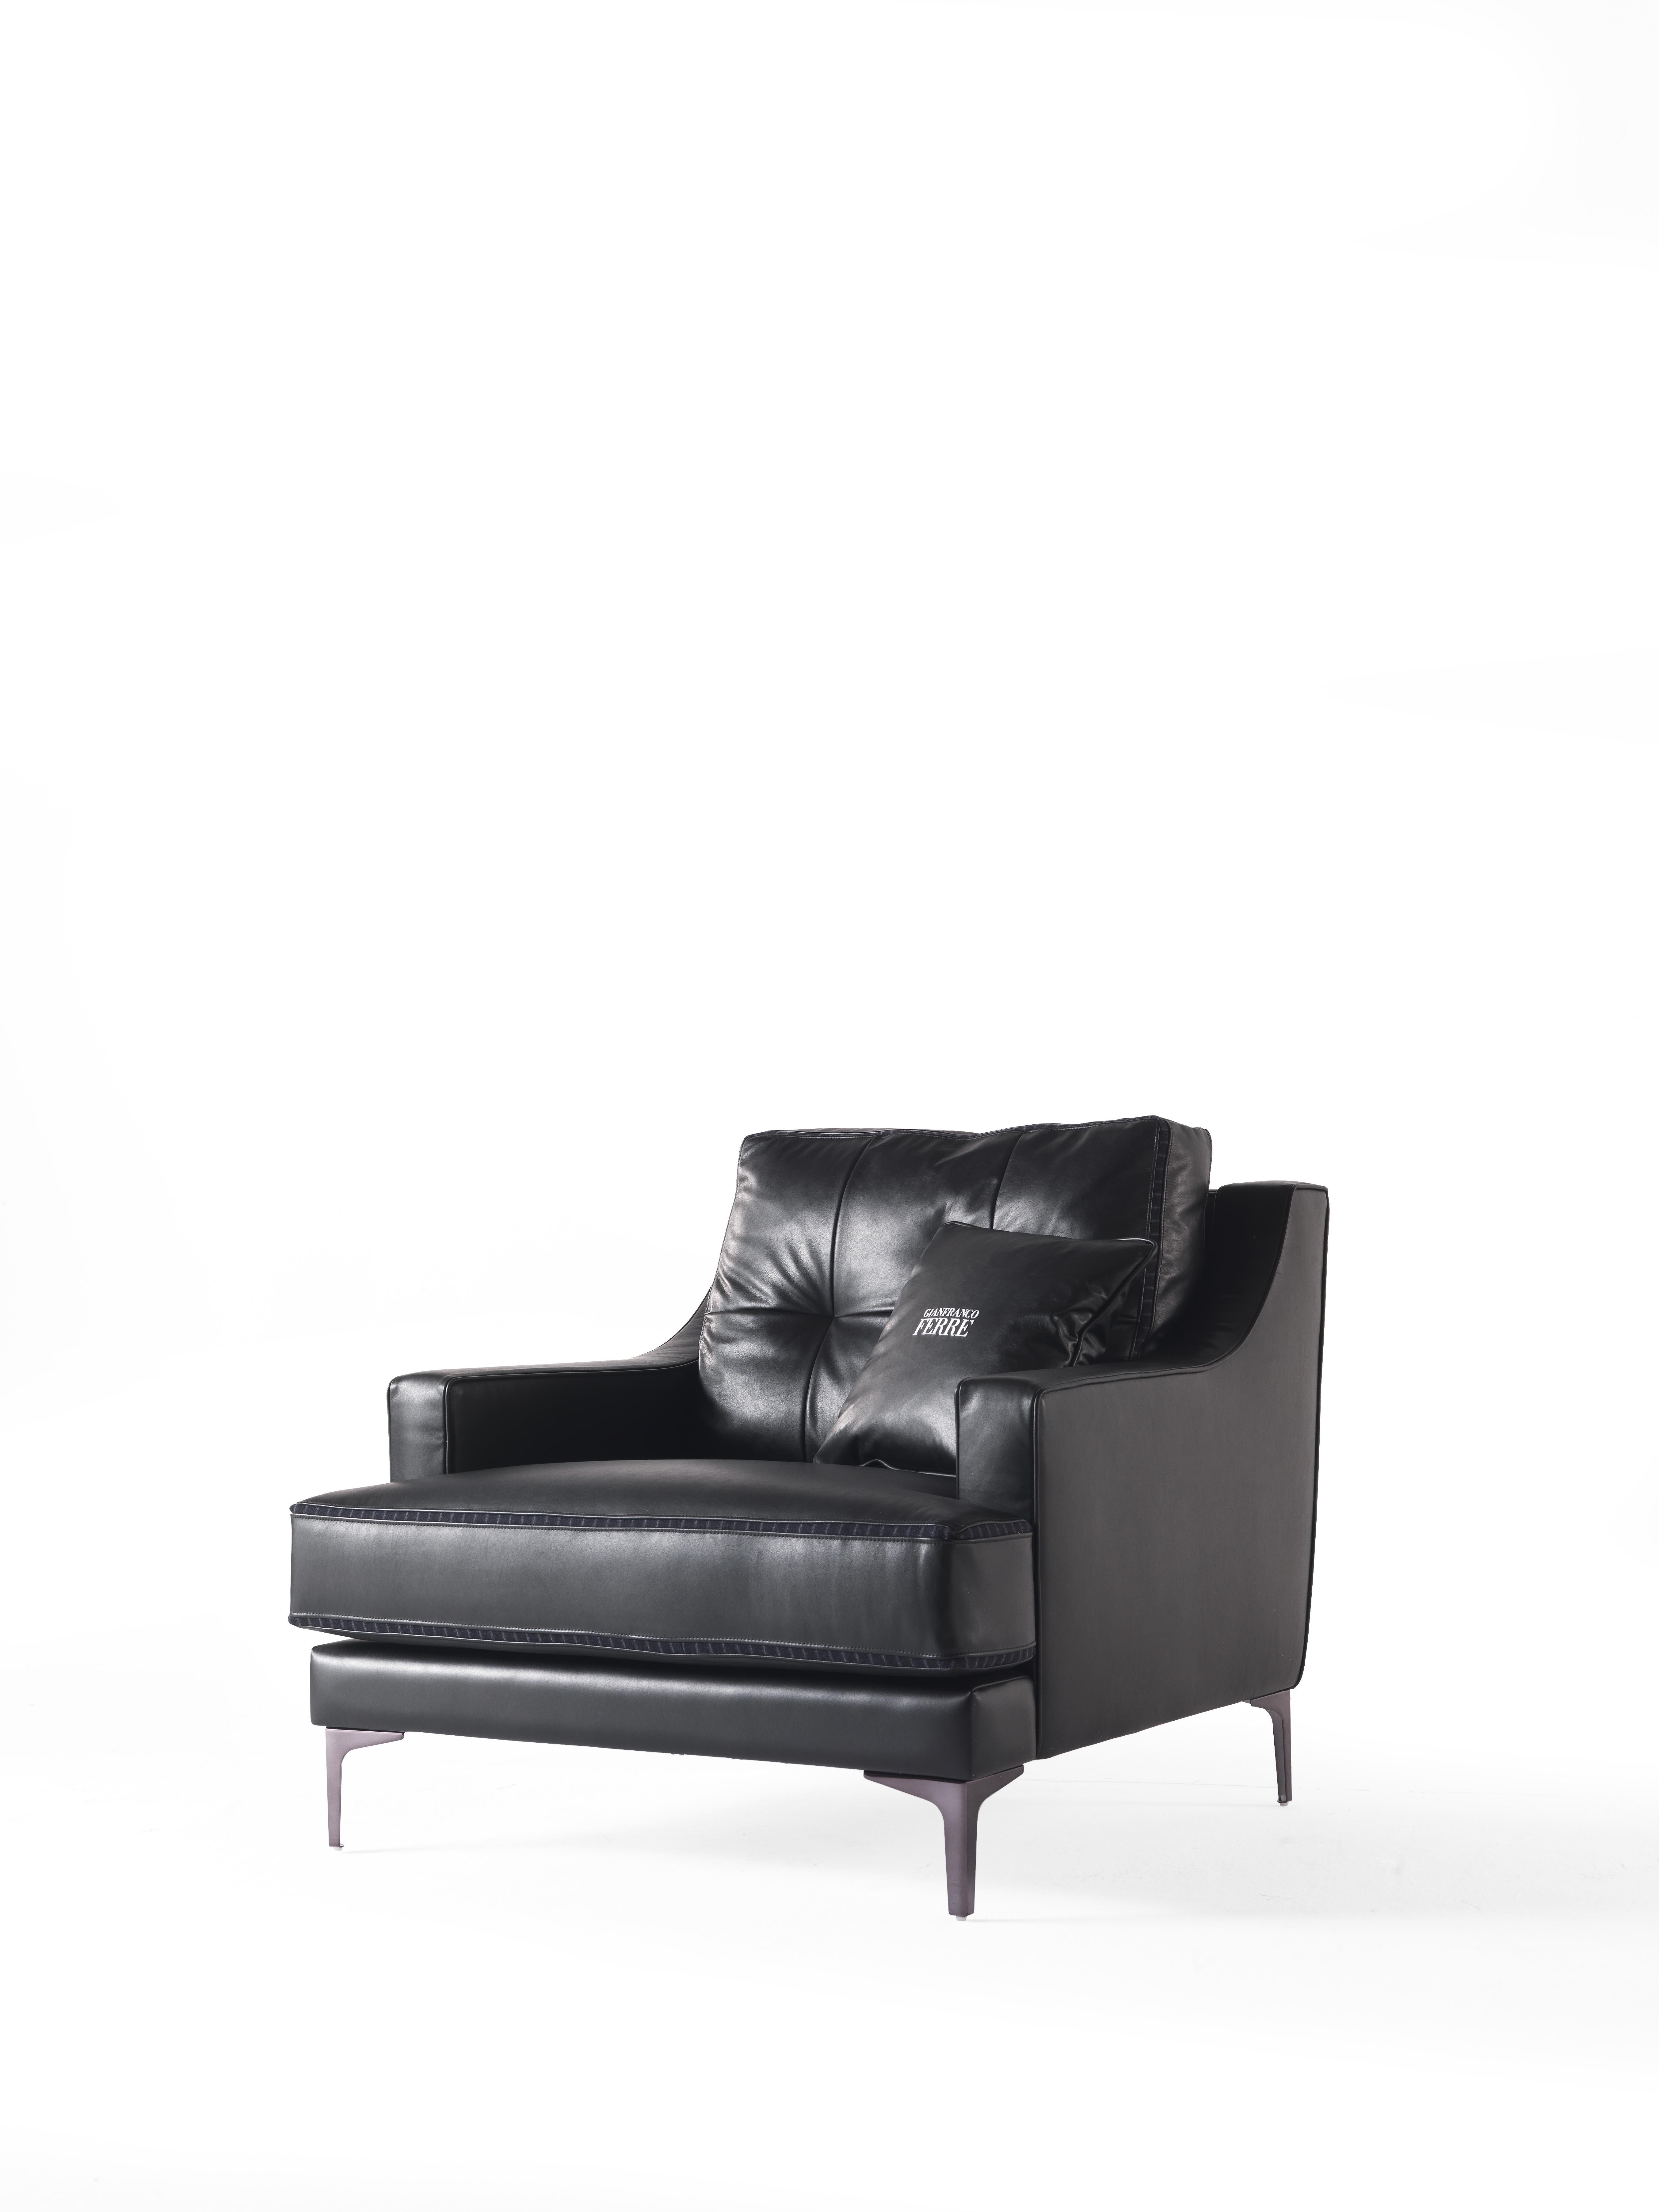 Ein Sessel mit urbanem Charme und kühnem Charakter, der die Eleganz von Leder mit Details aus Nadelstreifenstoff im typischen Stil von Gianfranco Ferré Home verbindet. Die Füße aus schwarz verchromtem Metall bestätigen den großstädtischen Stil und